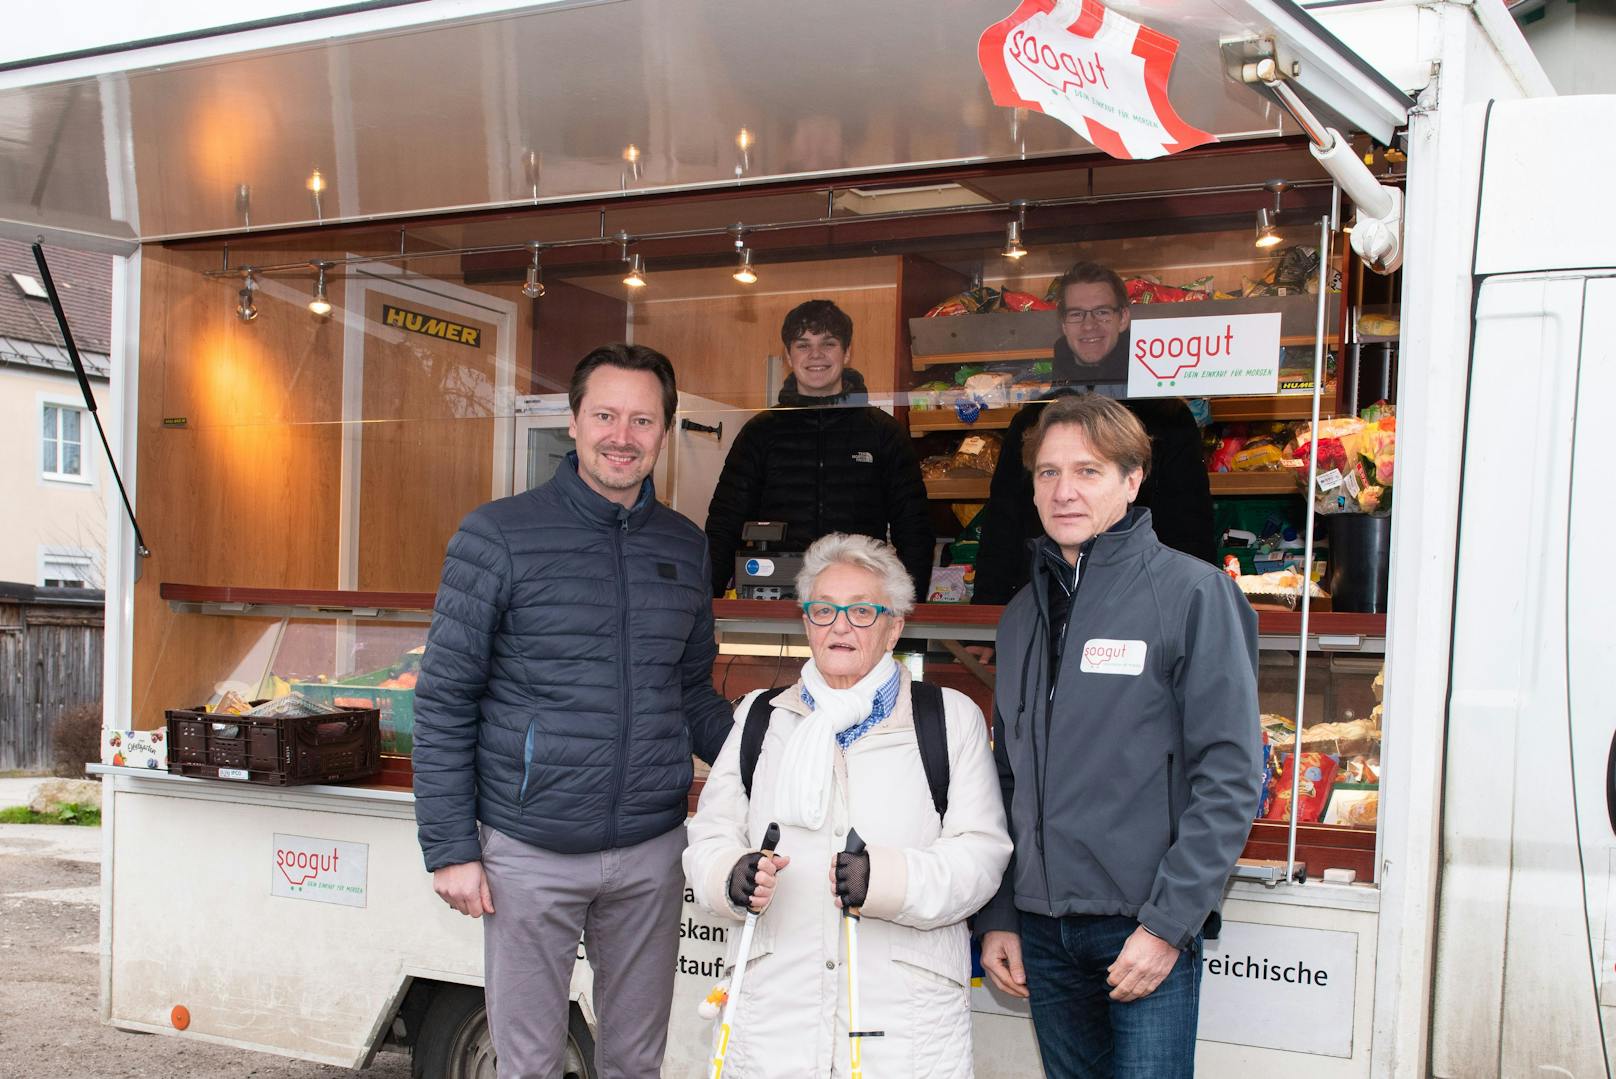 Bürgermeister Rainer Handlfinger und Elfriede Dotter freuen sich über den Mobilen soogut-Verkaufstand in ihrer Gemeinde.